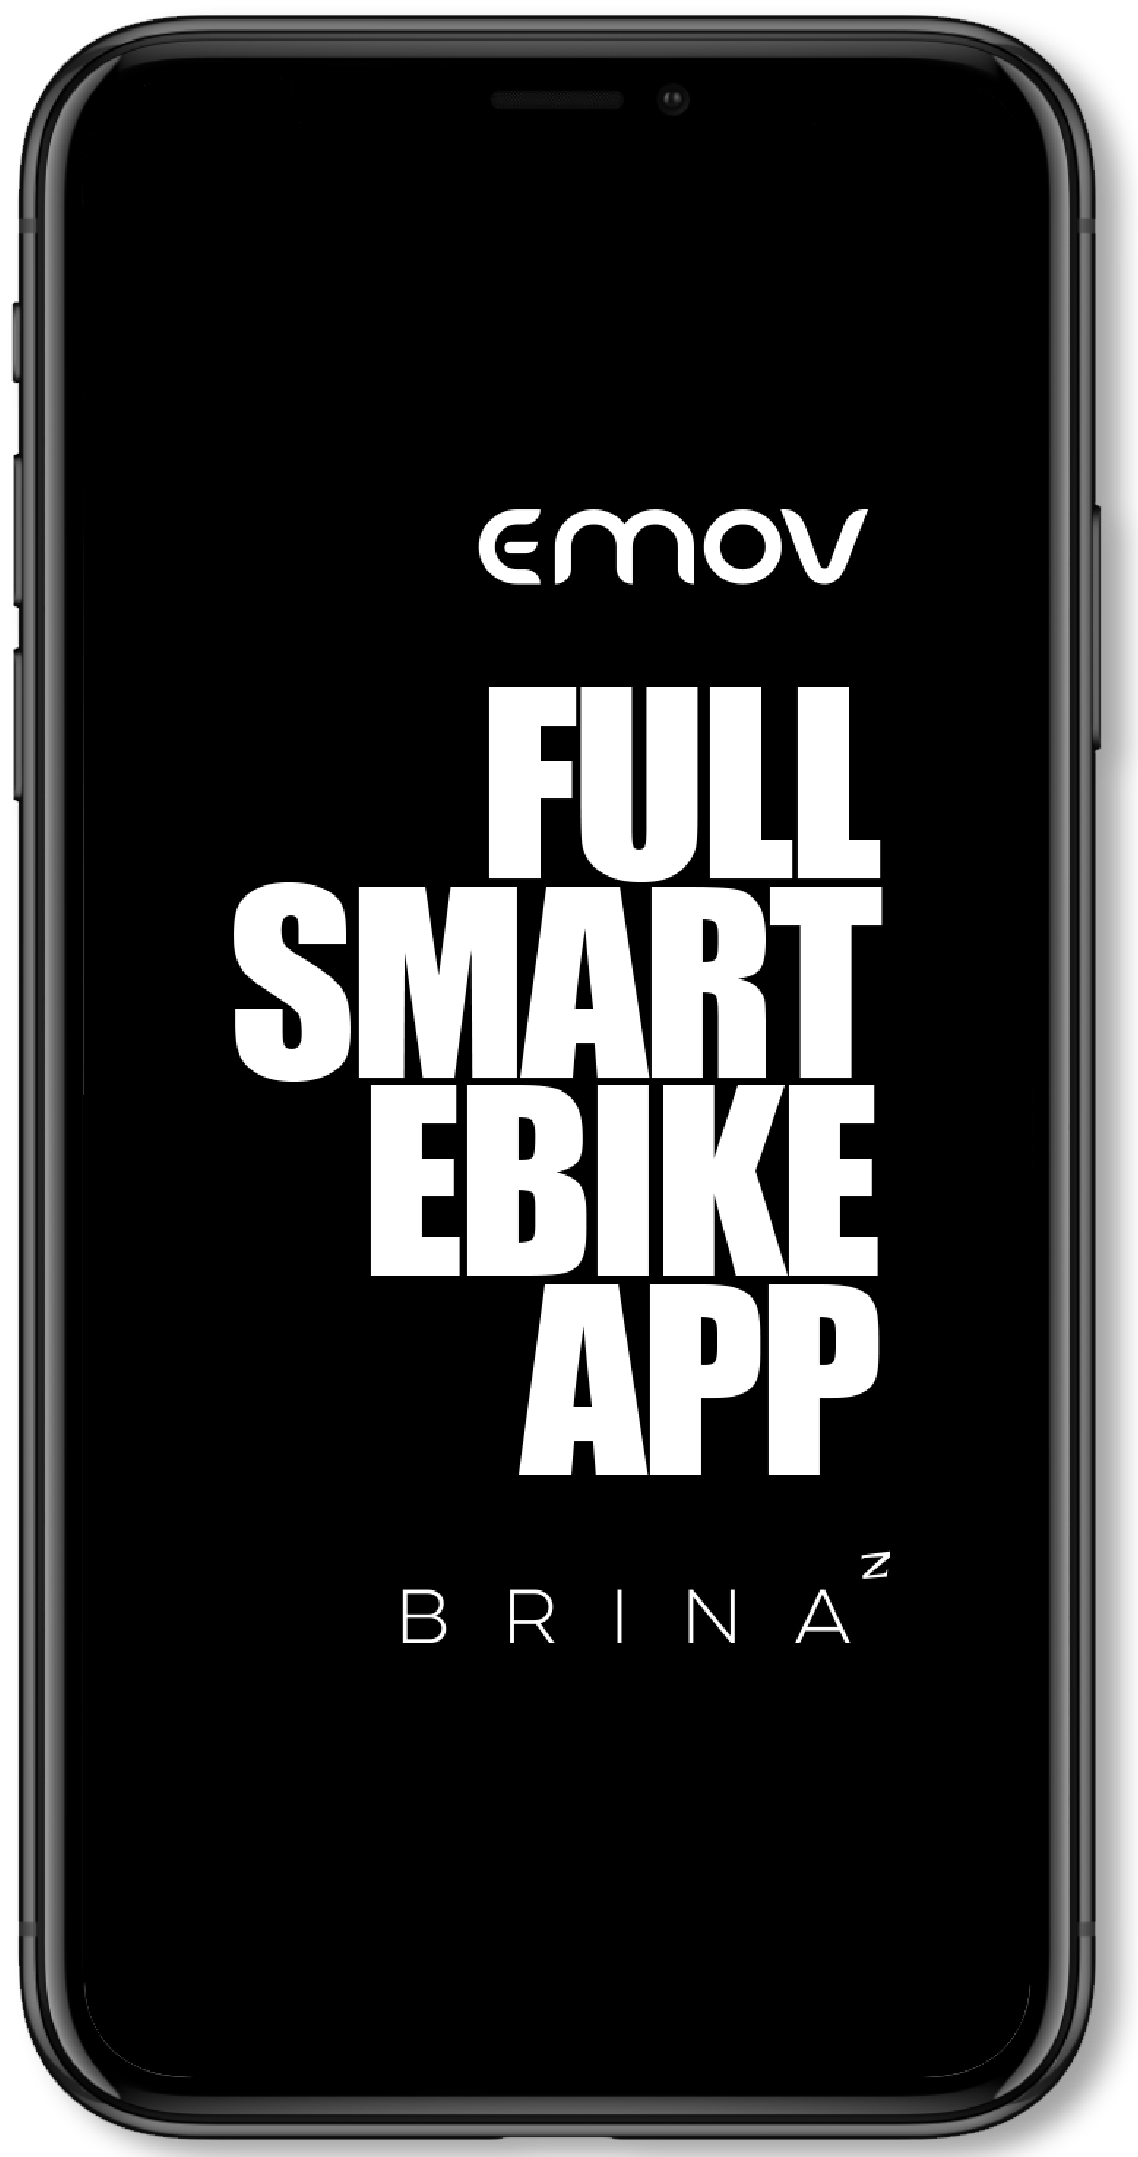 Emov full smart ebike APP Brina2